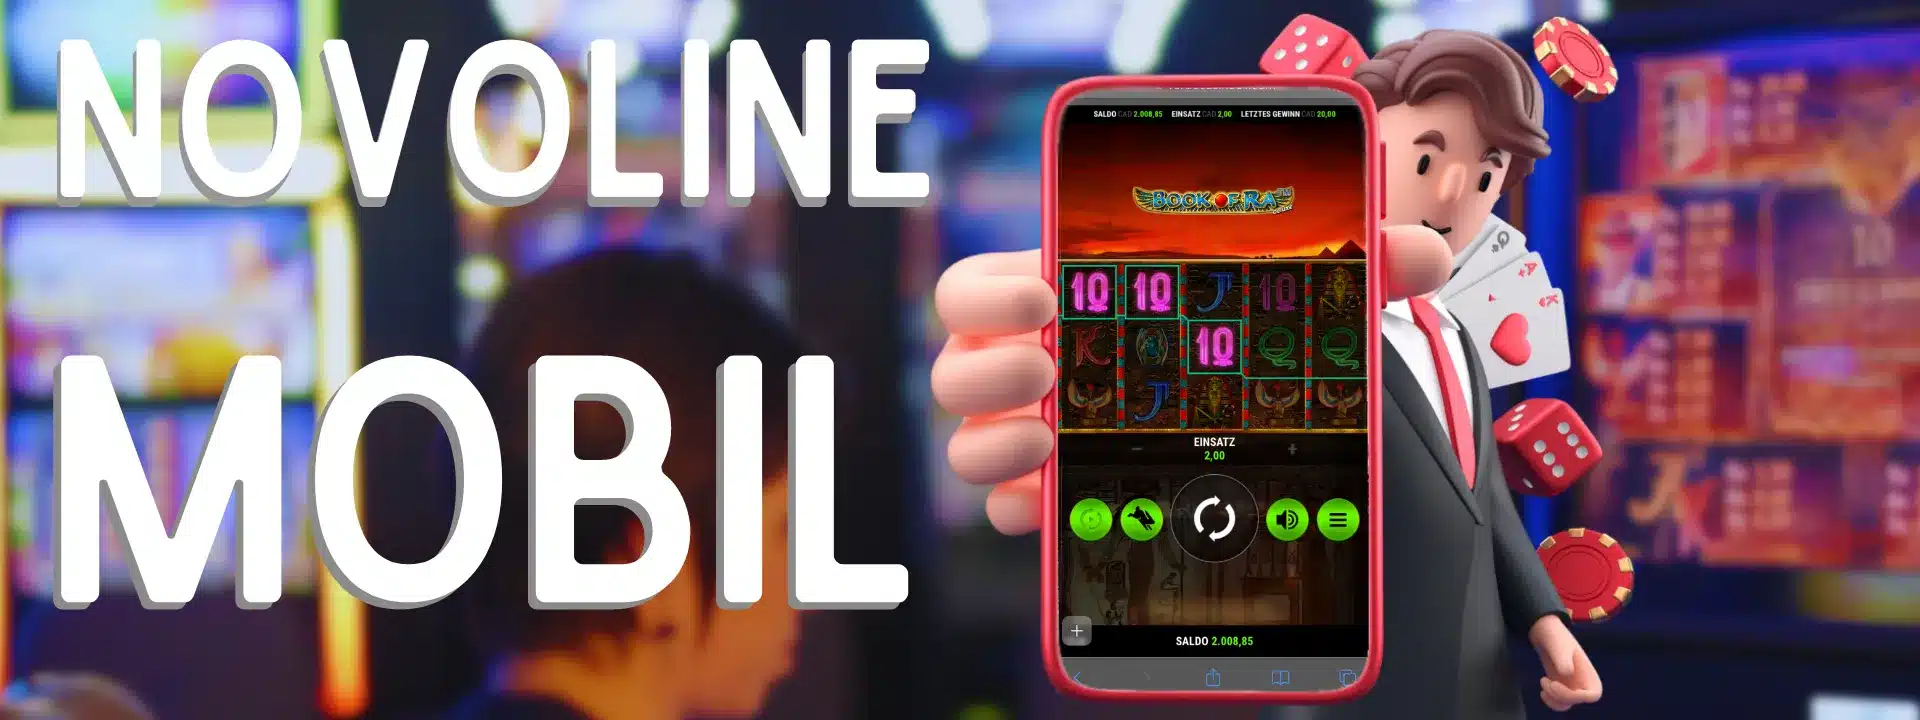 Novoline Online Mobil Spielen: Unterwegs nicht auf Spannung verzichten